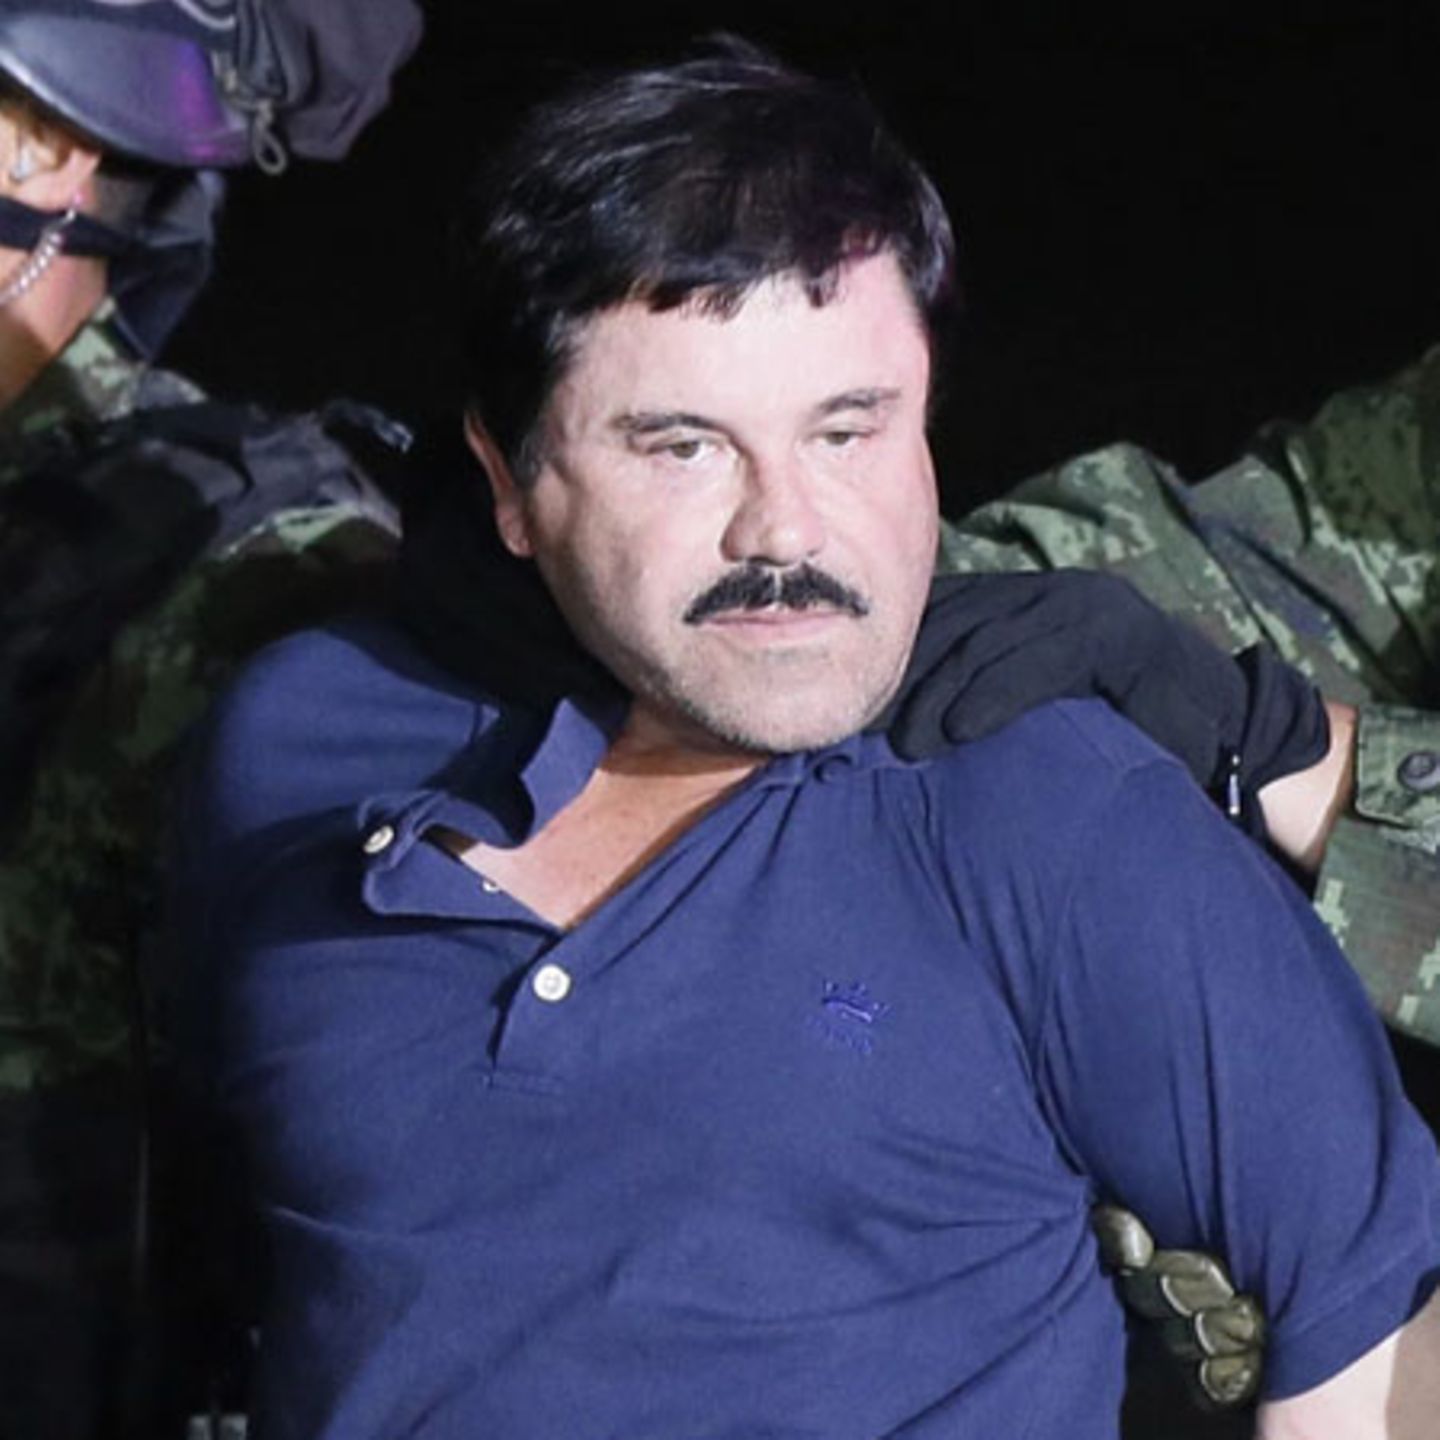 El Chapo Vor Einem Jahr Verurteilt Doch Das Morden In Mexiko Geht Weiter Stern De